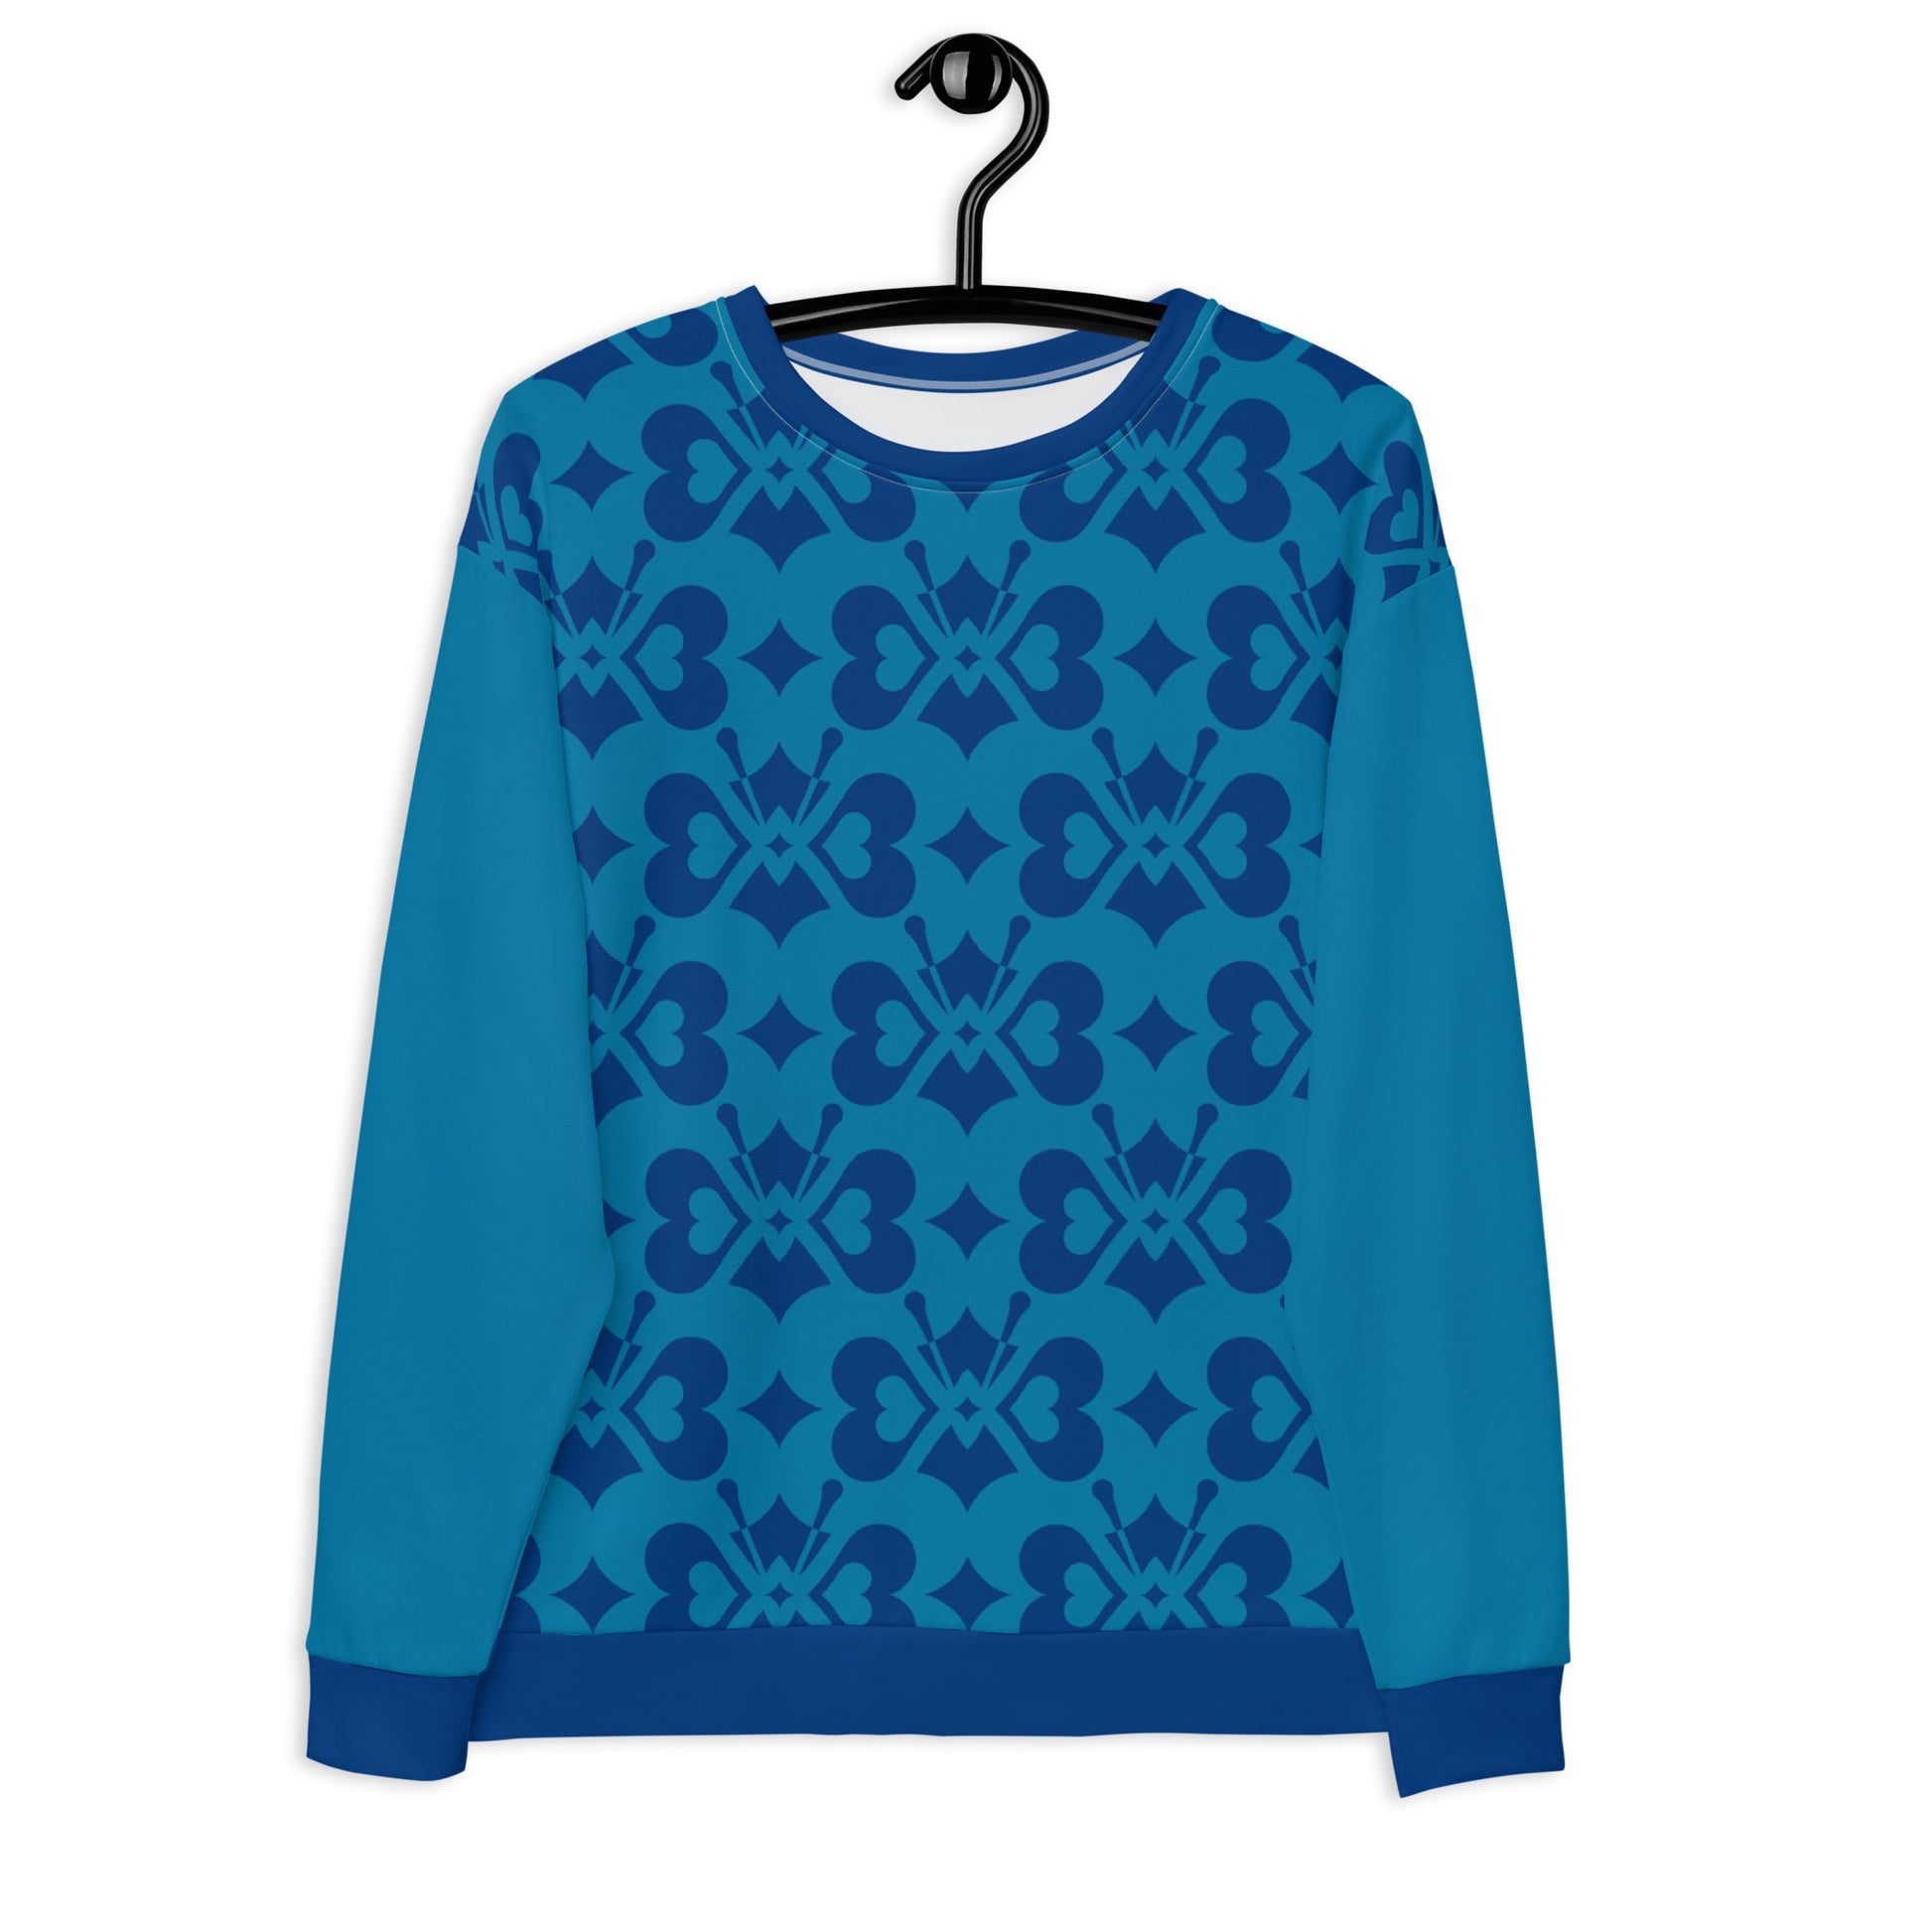 LOVE BUTTERFLY all blue - Unisex Sweatshirt